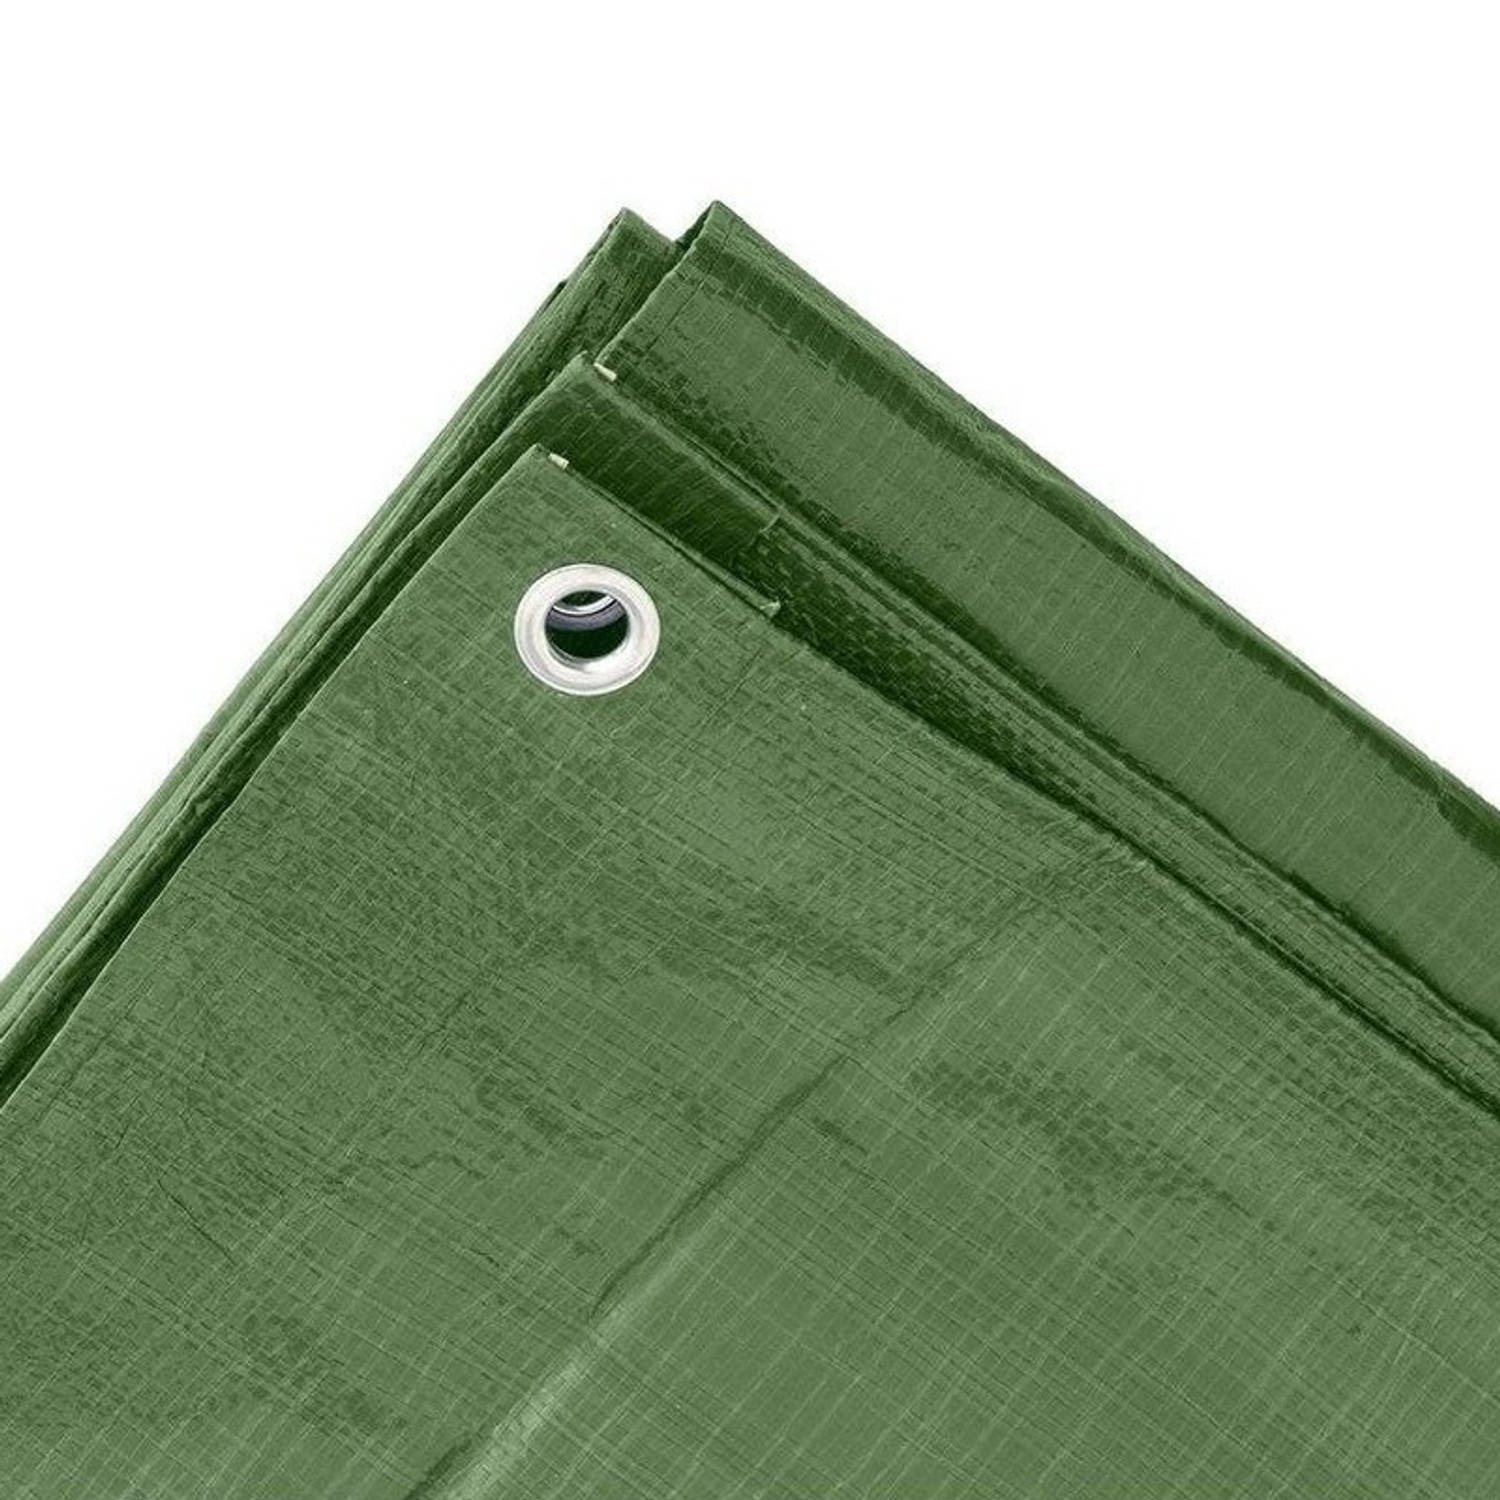 Groen afdekzeil / dekkleed 4 x 5 m - Afdekzeilen